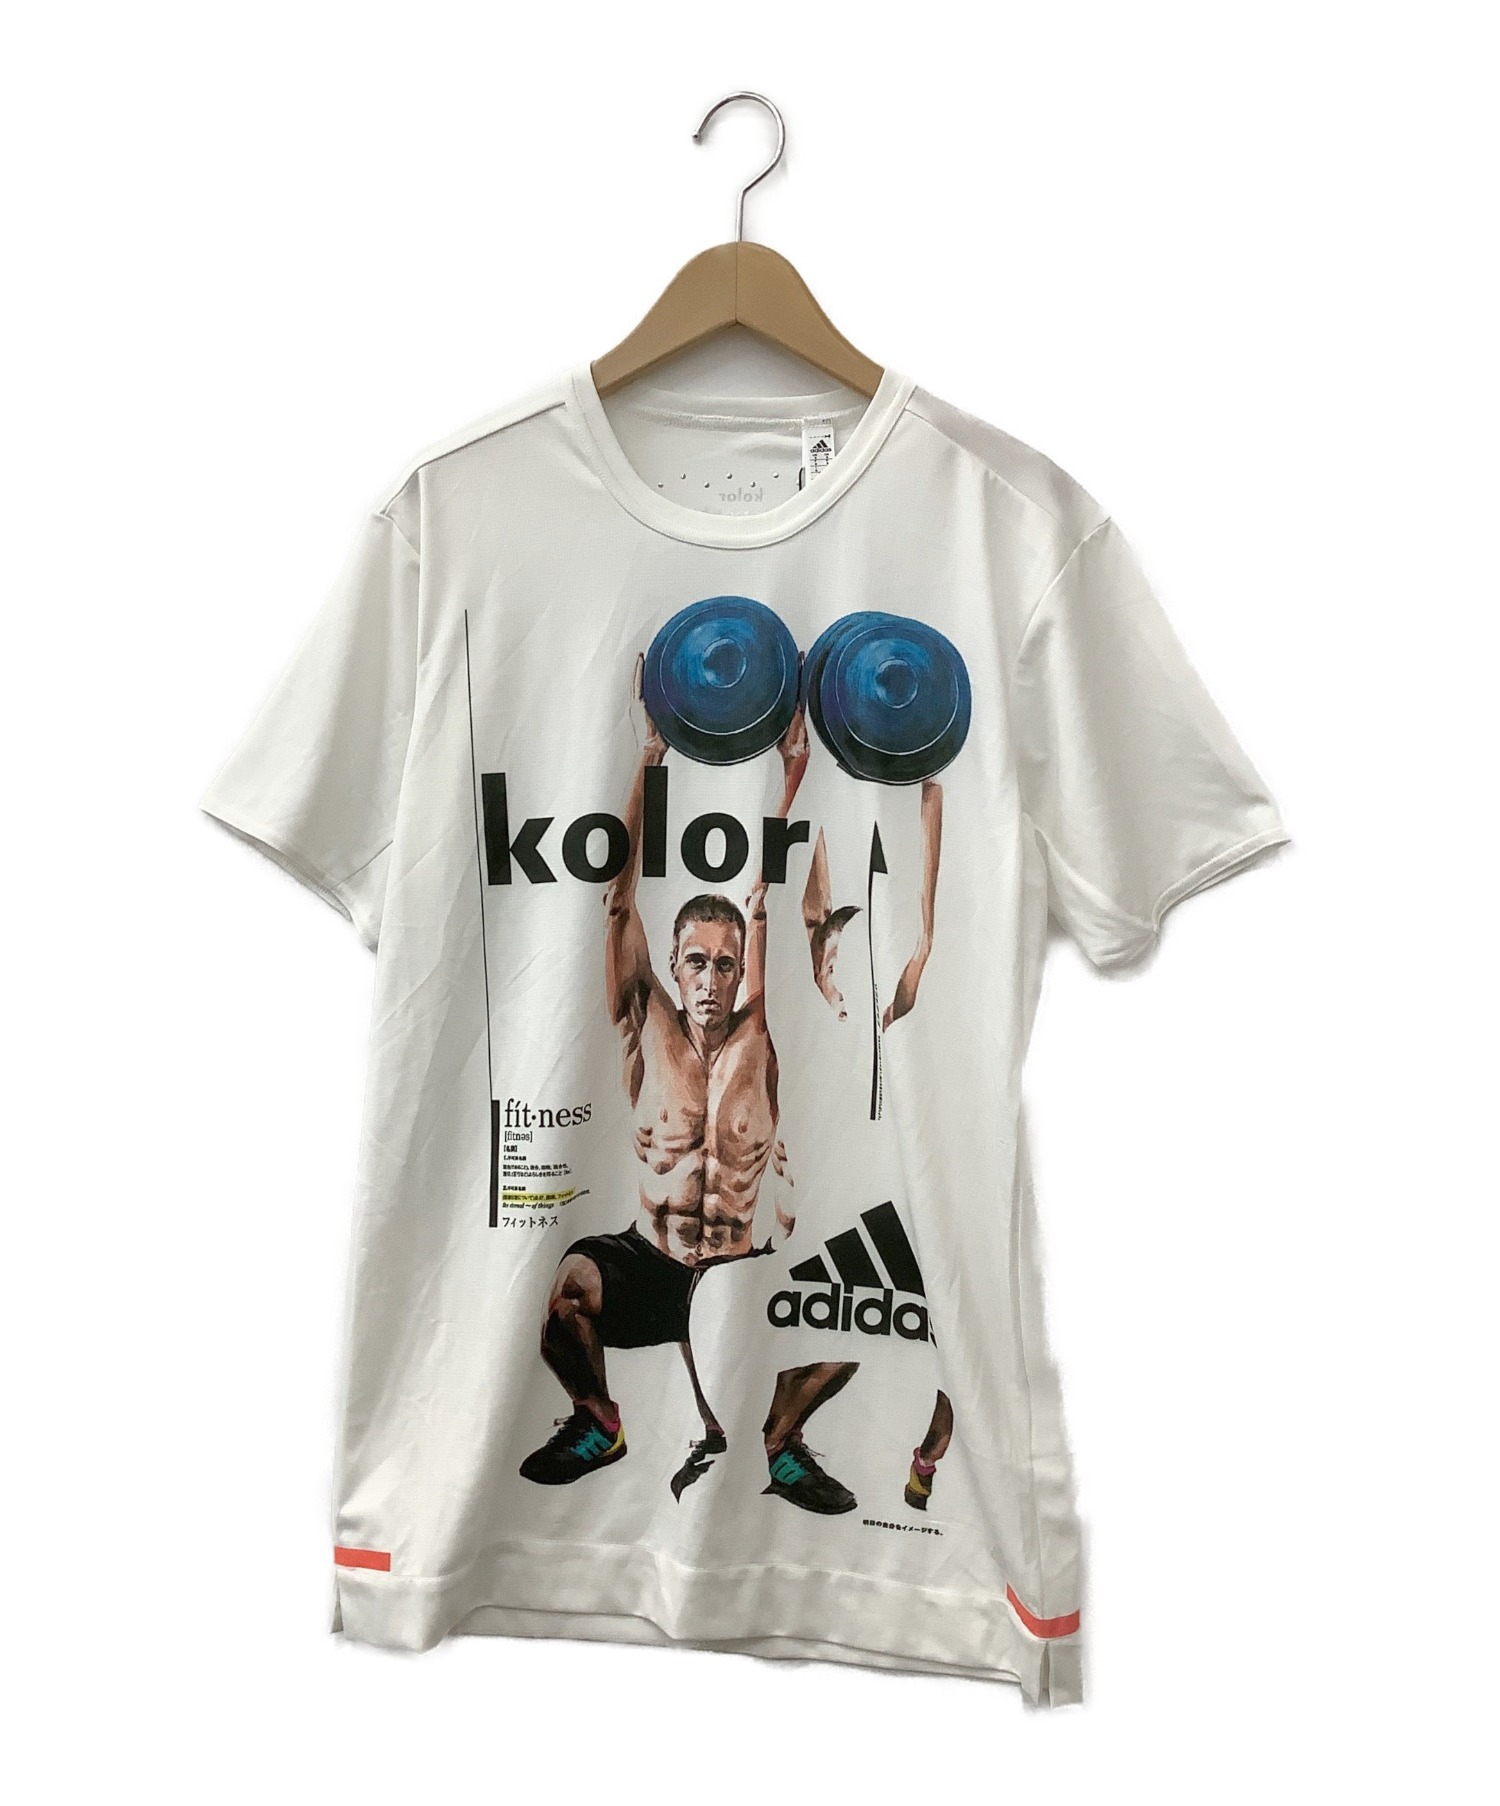 【激レア】 adidas アディダス 刺繍ロゴ デカロゴ バイカラー Tシャツ